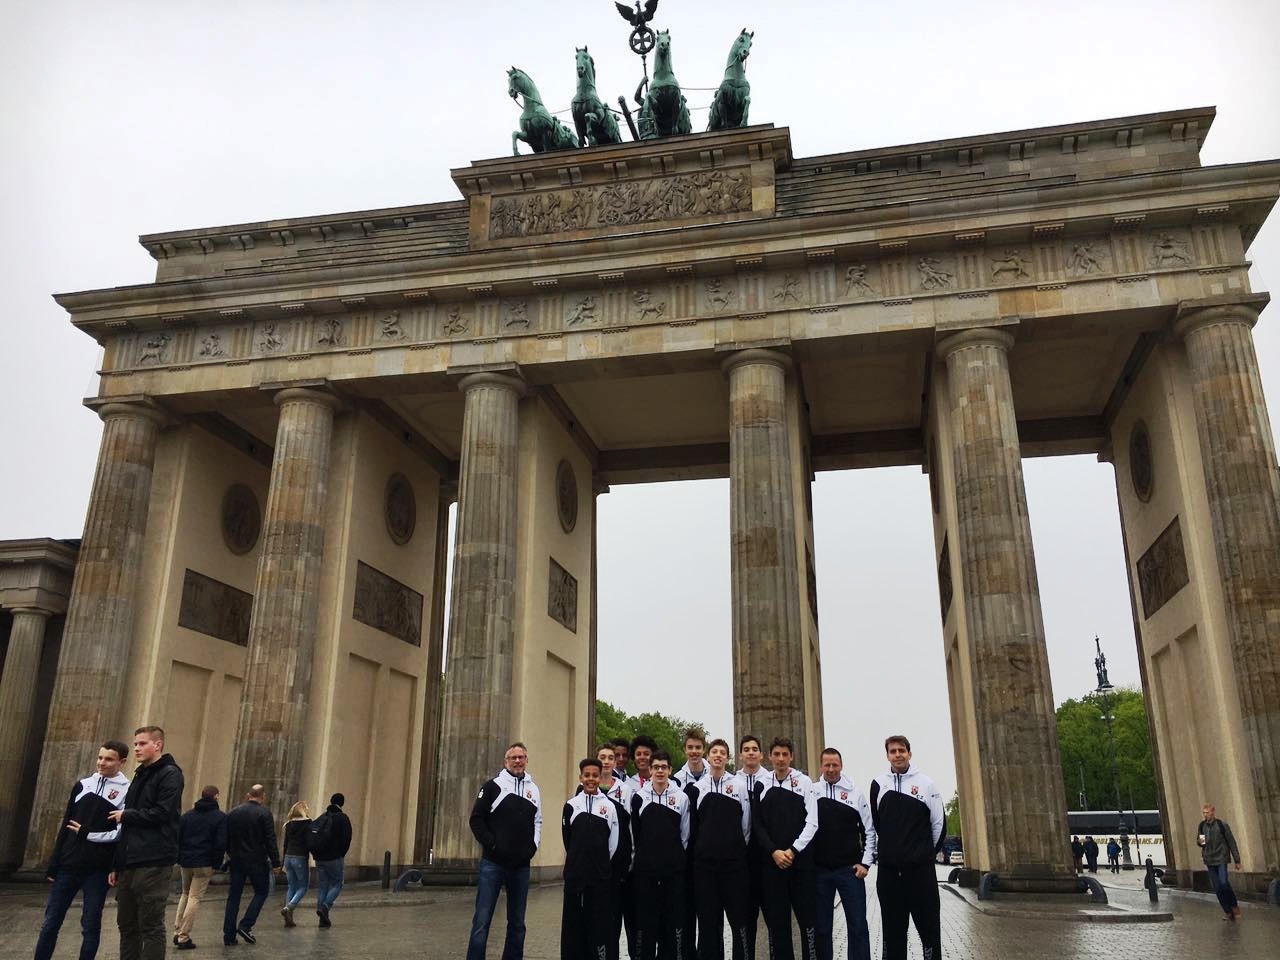 Basketballteam des Gymnasium Theresianum Mainz vor Brandenburger Tor in Berlin − Jugend trainiert für Olympia